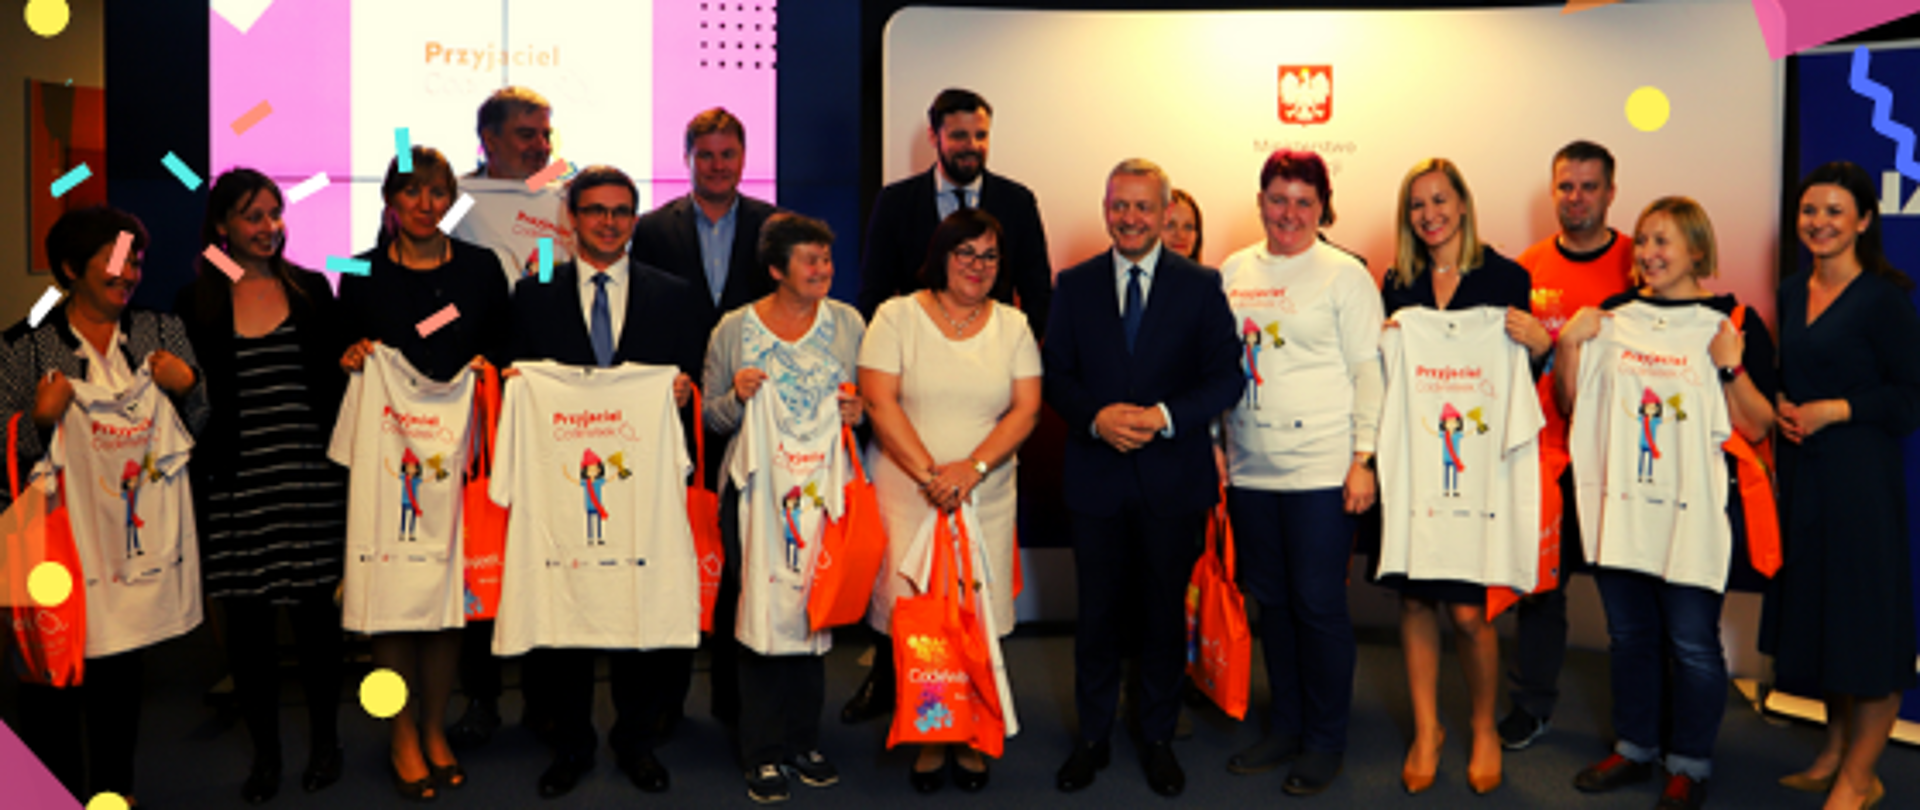 Zdjęcie przedstawia kilkanaście dorosłych osób pozujących i prezentujących koszulki "Przyjaciel Codeweek". U dołu znajduje się pasek logotypów: Europejskie Fundusze Polska Cyfrowa, Ministerstwo Cyfryzacji, NASK i Unia Europejska Europejski Fundusz Rozwoju Regionalnego.